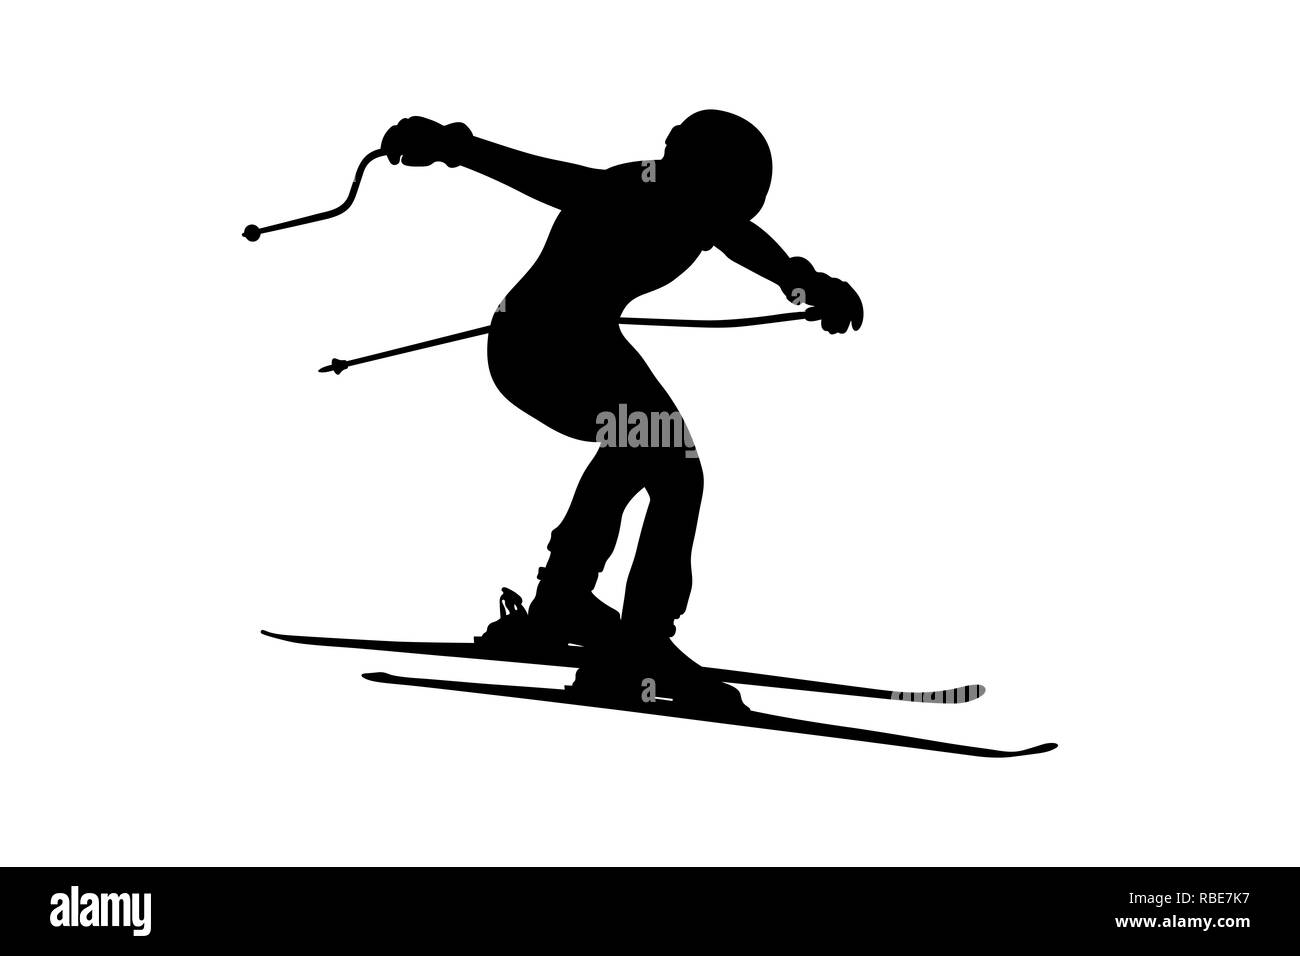 Ski alpin hommes jump downhill silhouette noire Banque D'Images